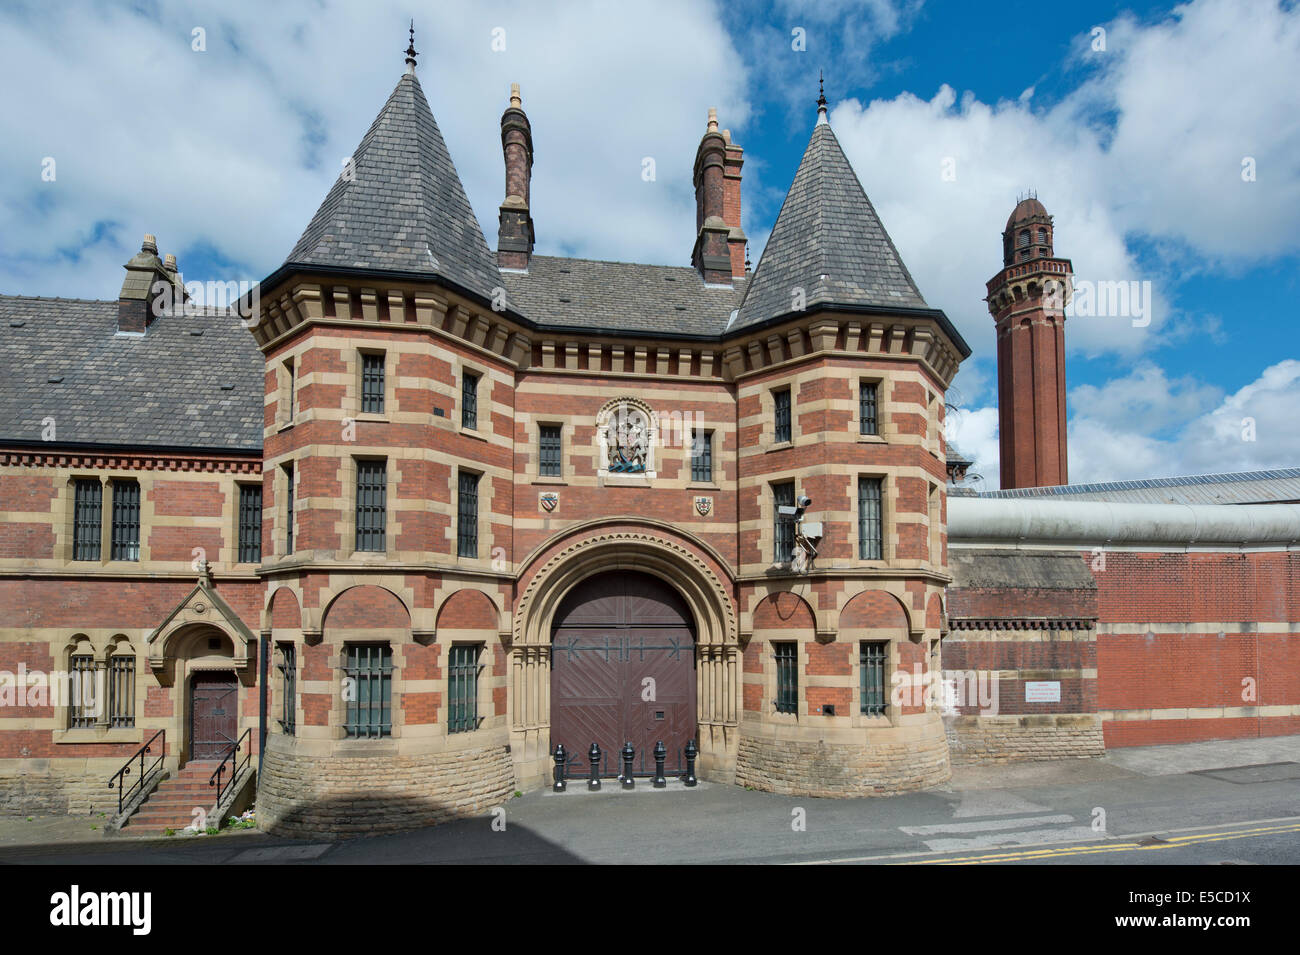 L'ancienne entrée de la prison de haute sécurité de Manchester, de prison à l'anciennement Strangeways. Banque D'Images